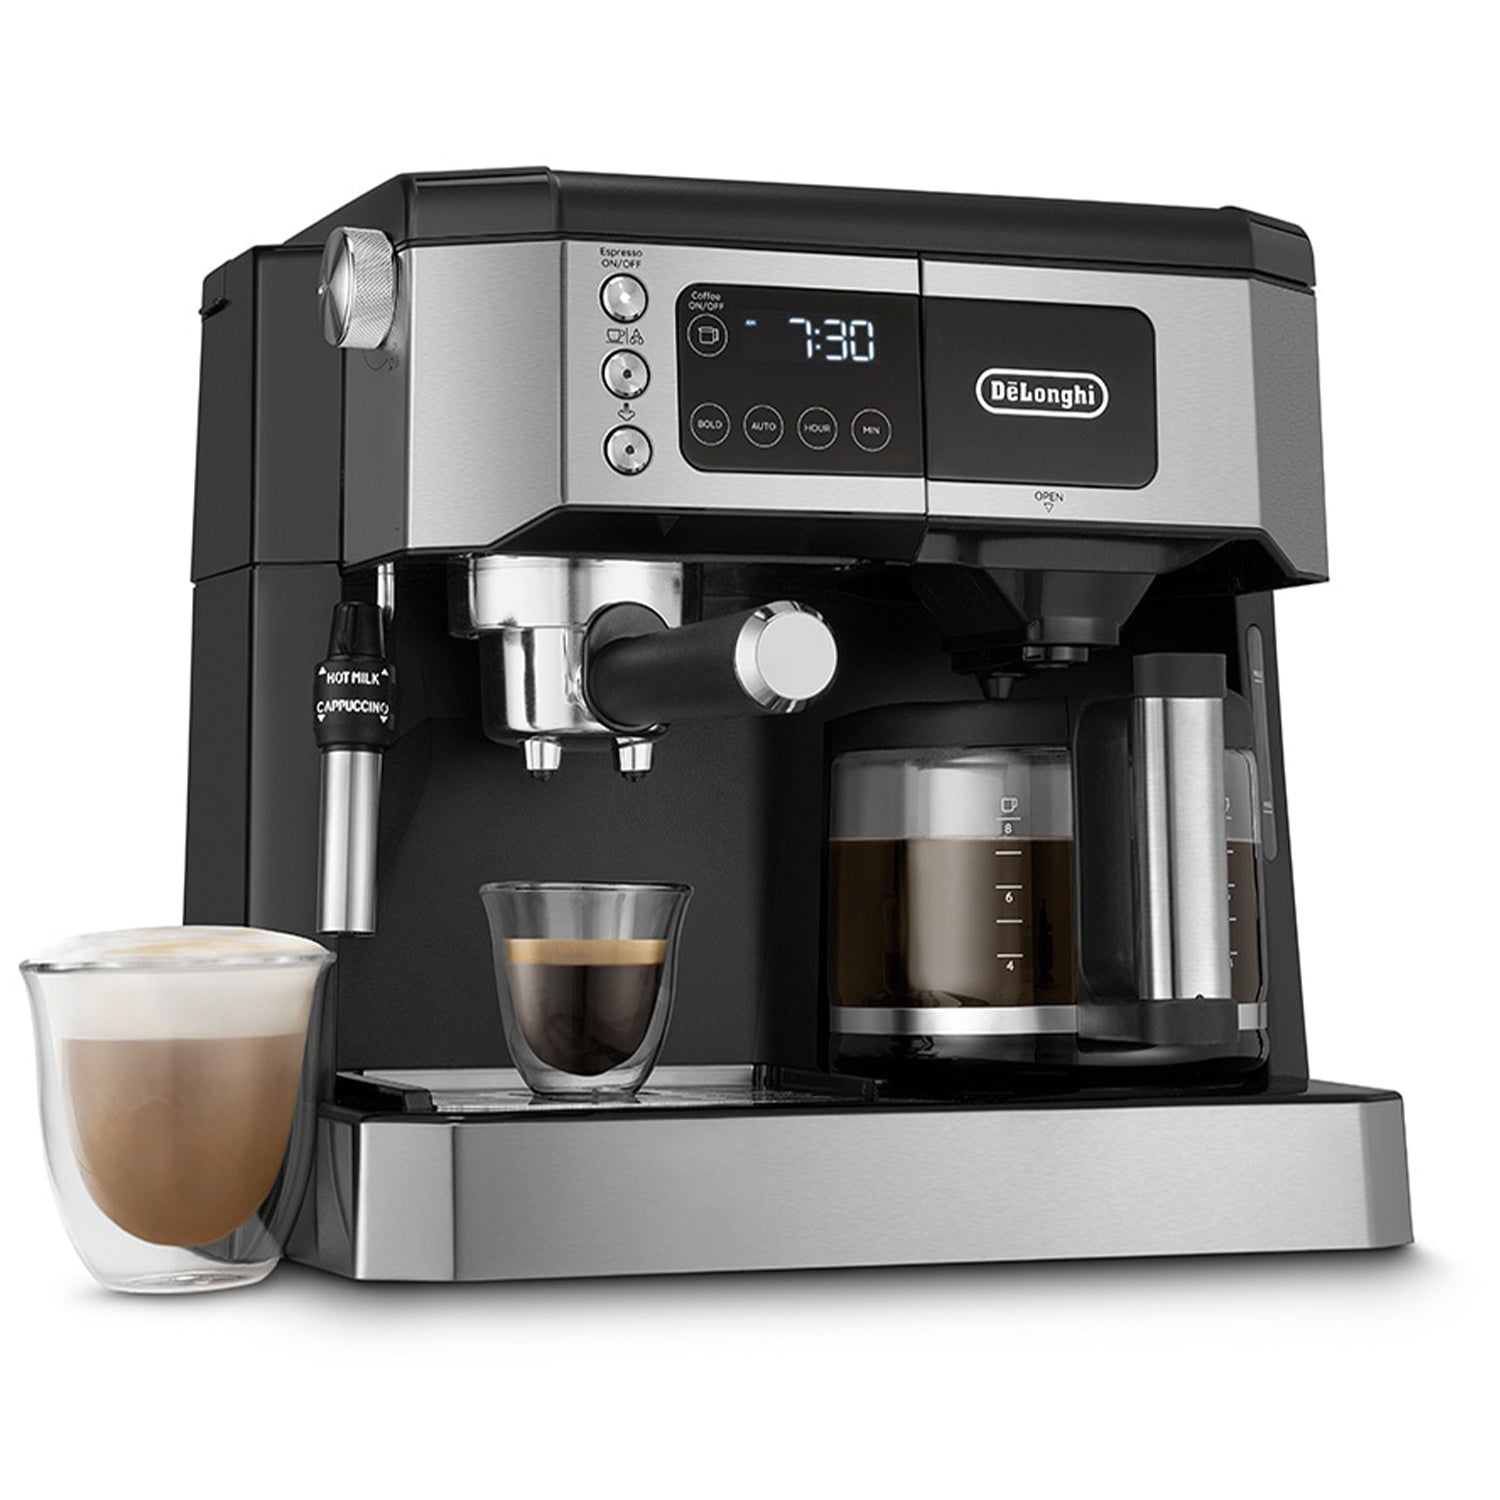 DeLonghi All-In-One Coffee & Espresso Maker